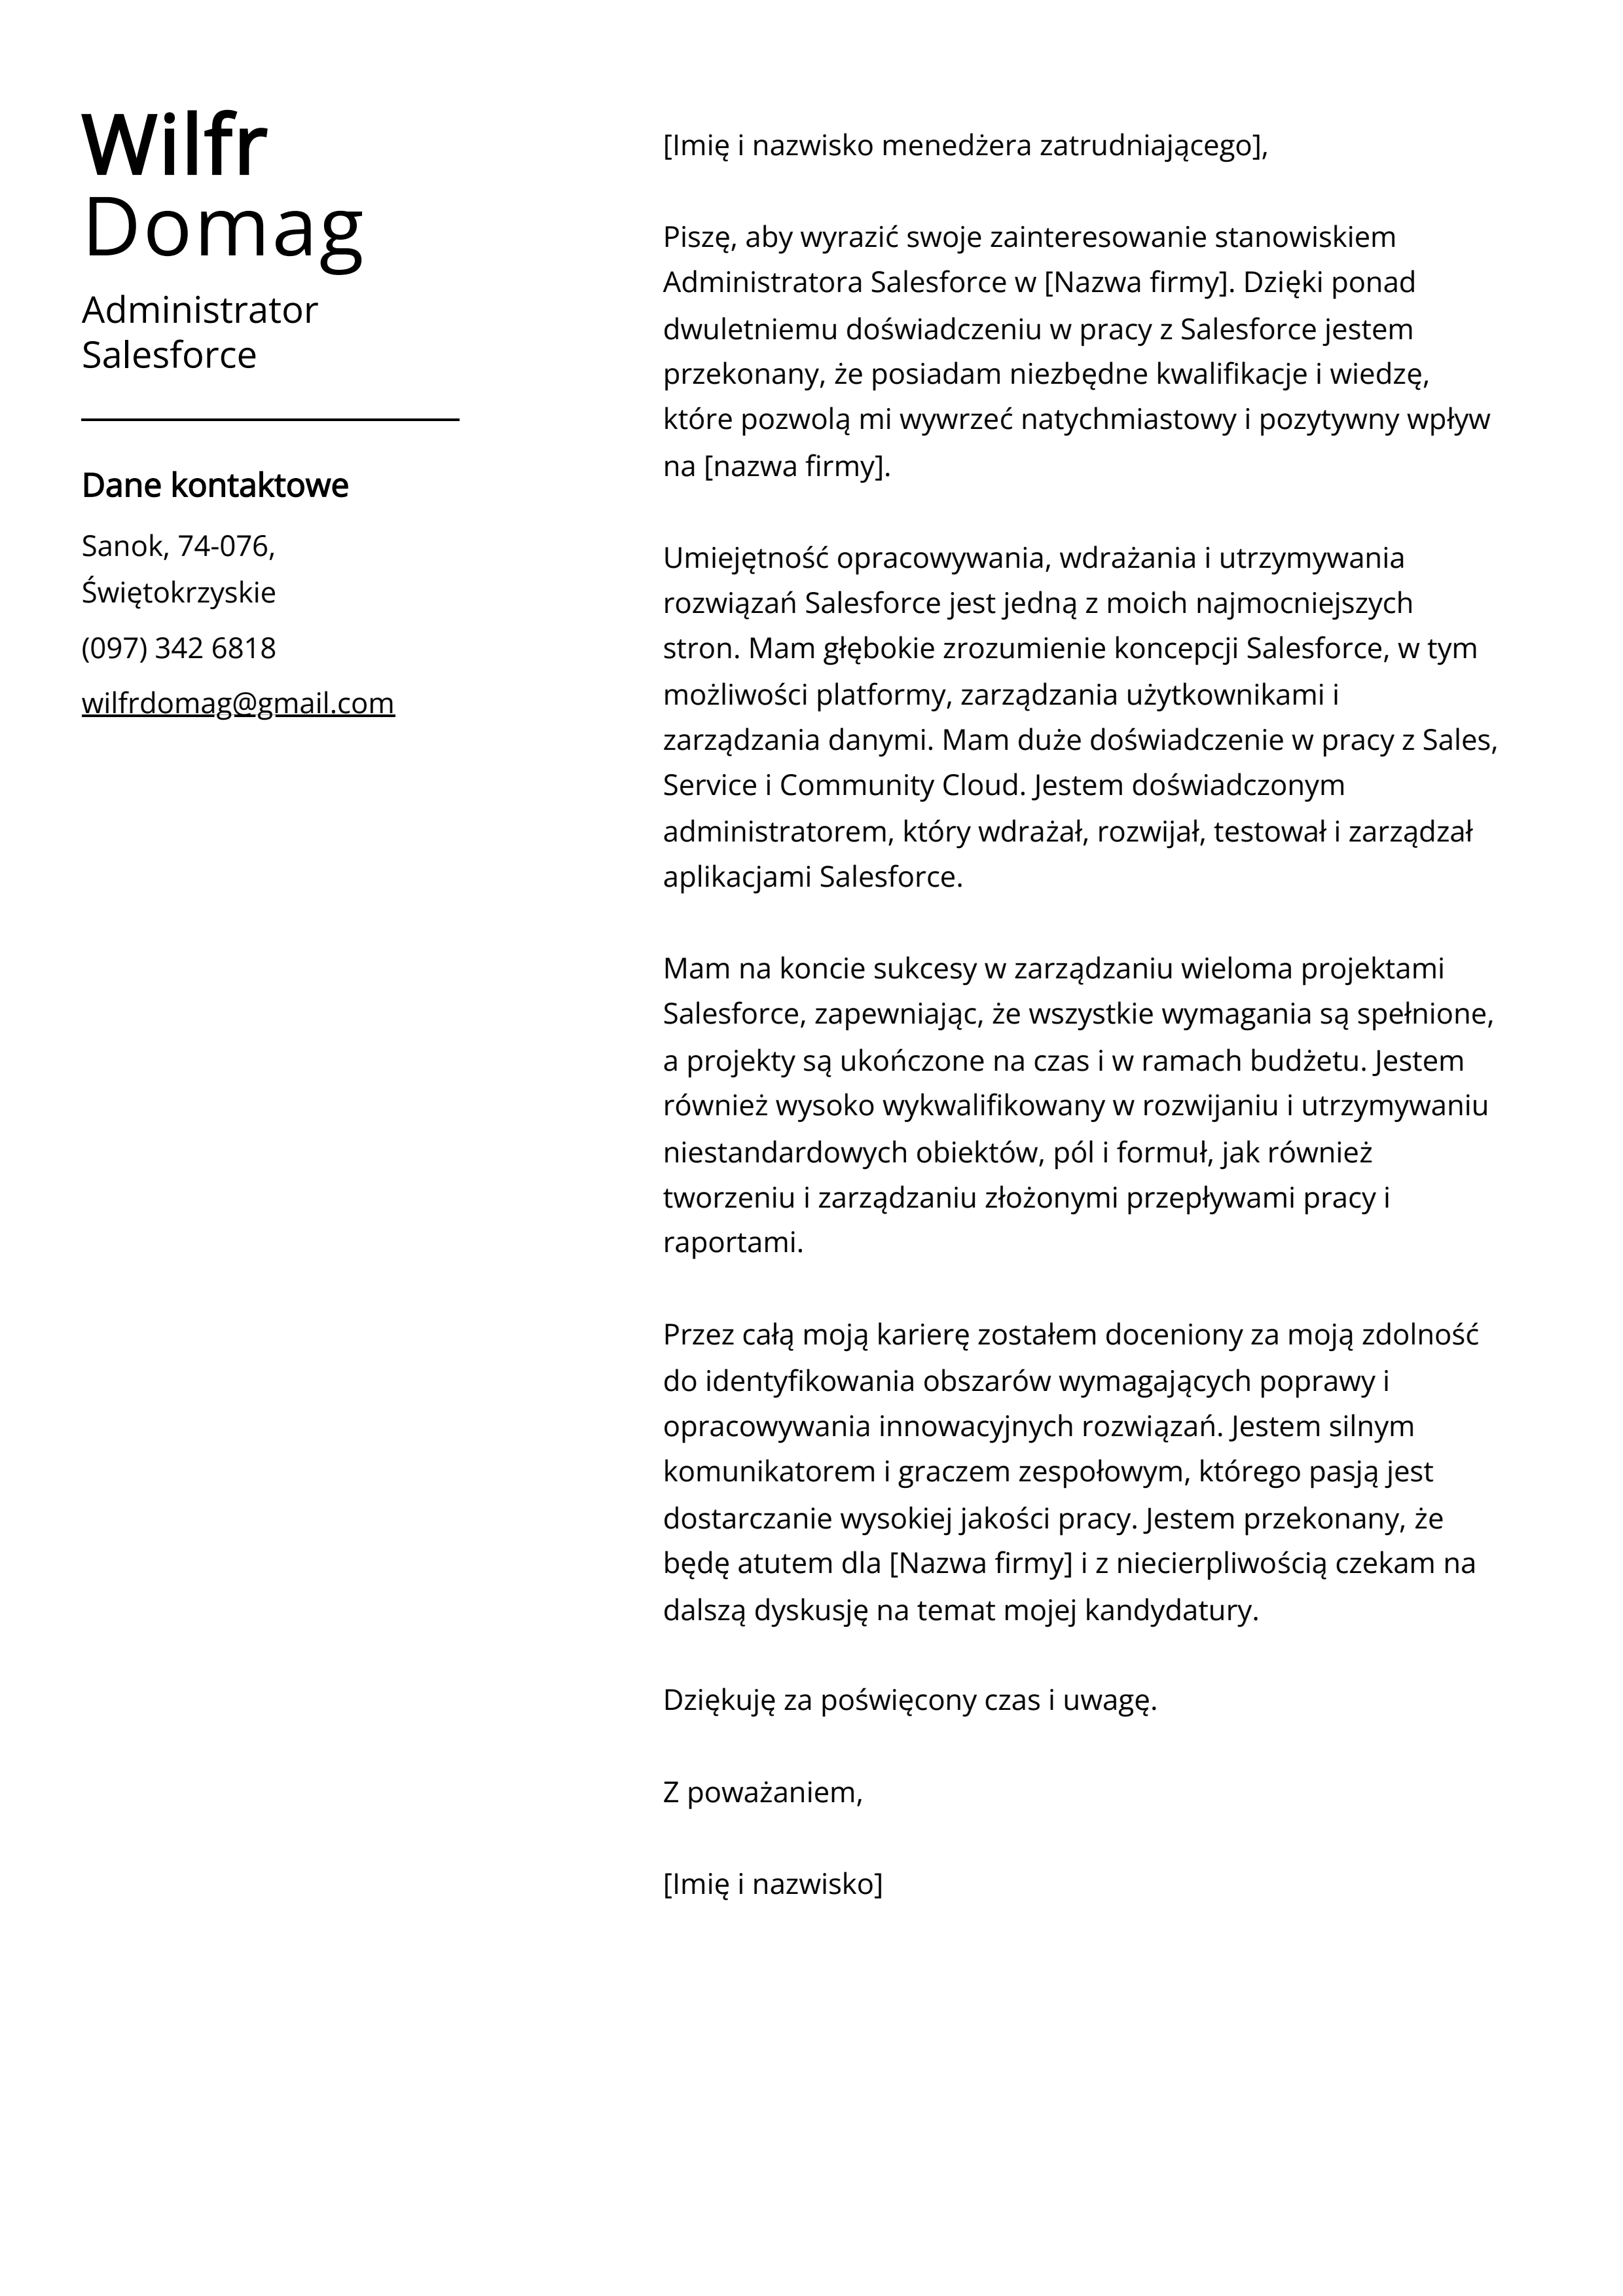 Przykład listu motywacyjnego administratora Salesforce